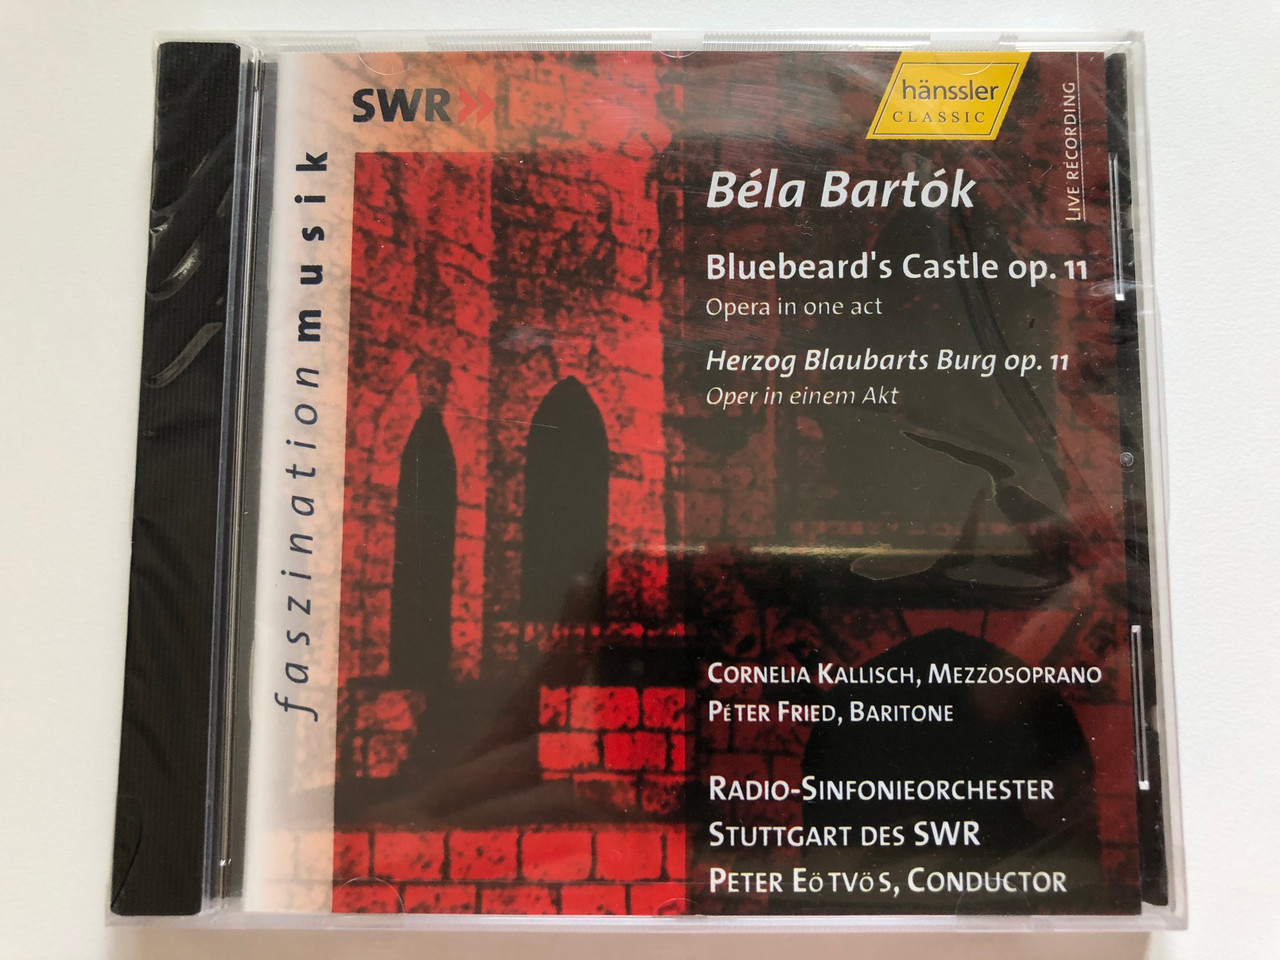 Béla Bartók - Bluebeard's Castle Op. 11 (Opera in one act) = Herzog  Blaubarts Burg Op. 11 (Oper in einem Akt) - Cornelia Kallisch  (mezzosoprano), Péter Fried (baritone) / Hänssler Classic Audio CD 2002 /  CD 93.070 - bibleinmylanguage